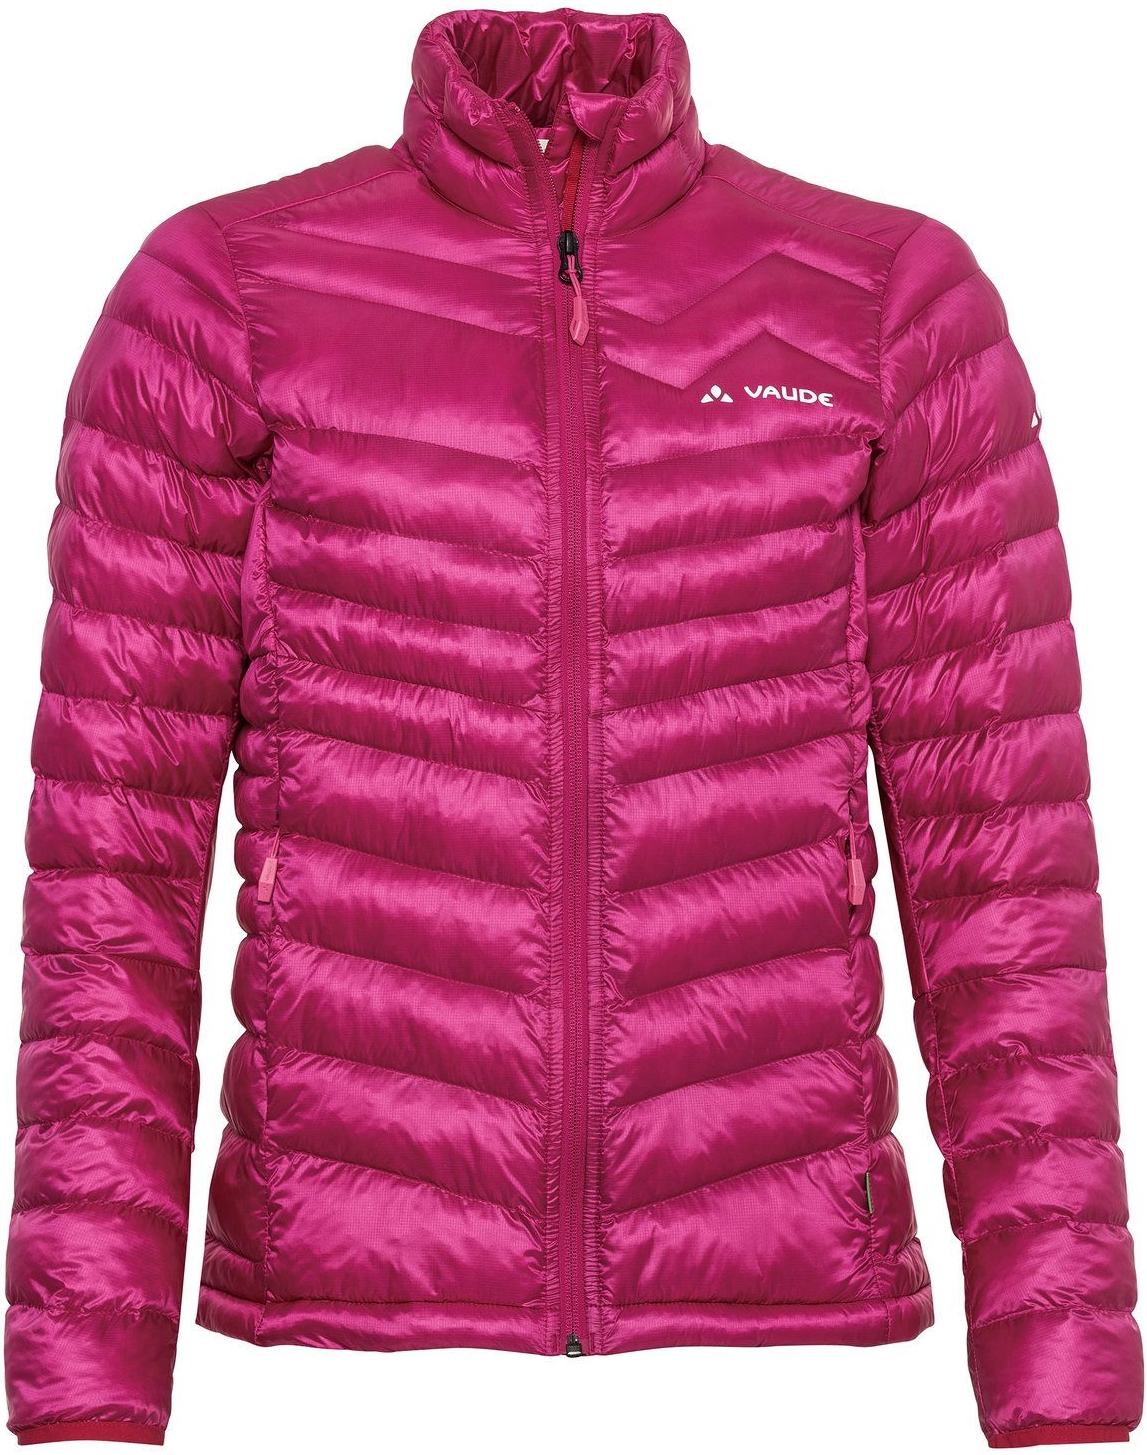 E-shop Vaude Women's Batura Insulation Jacket - rich pink S